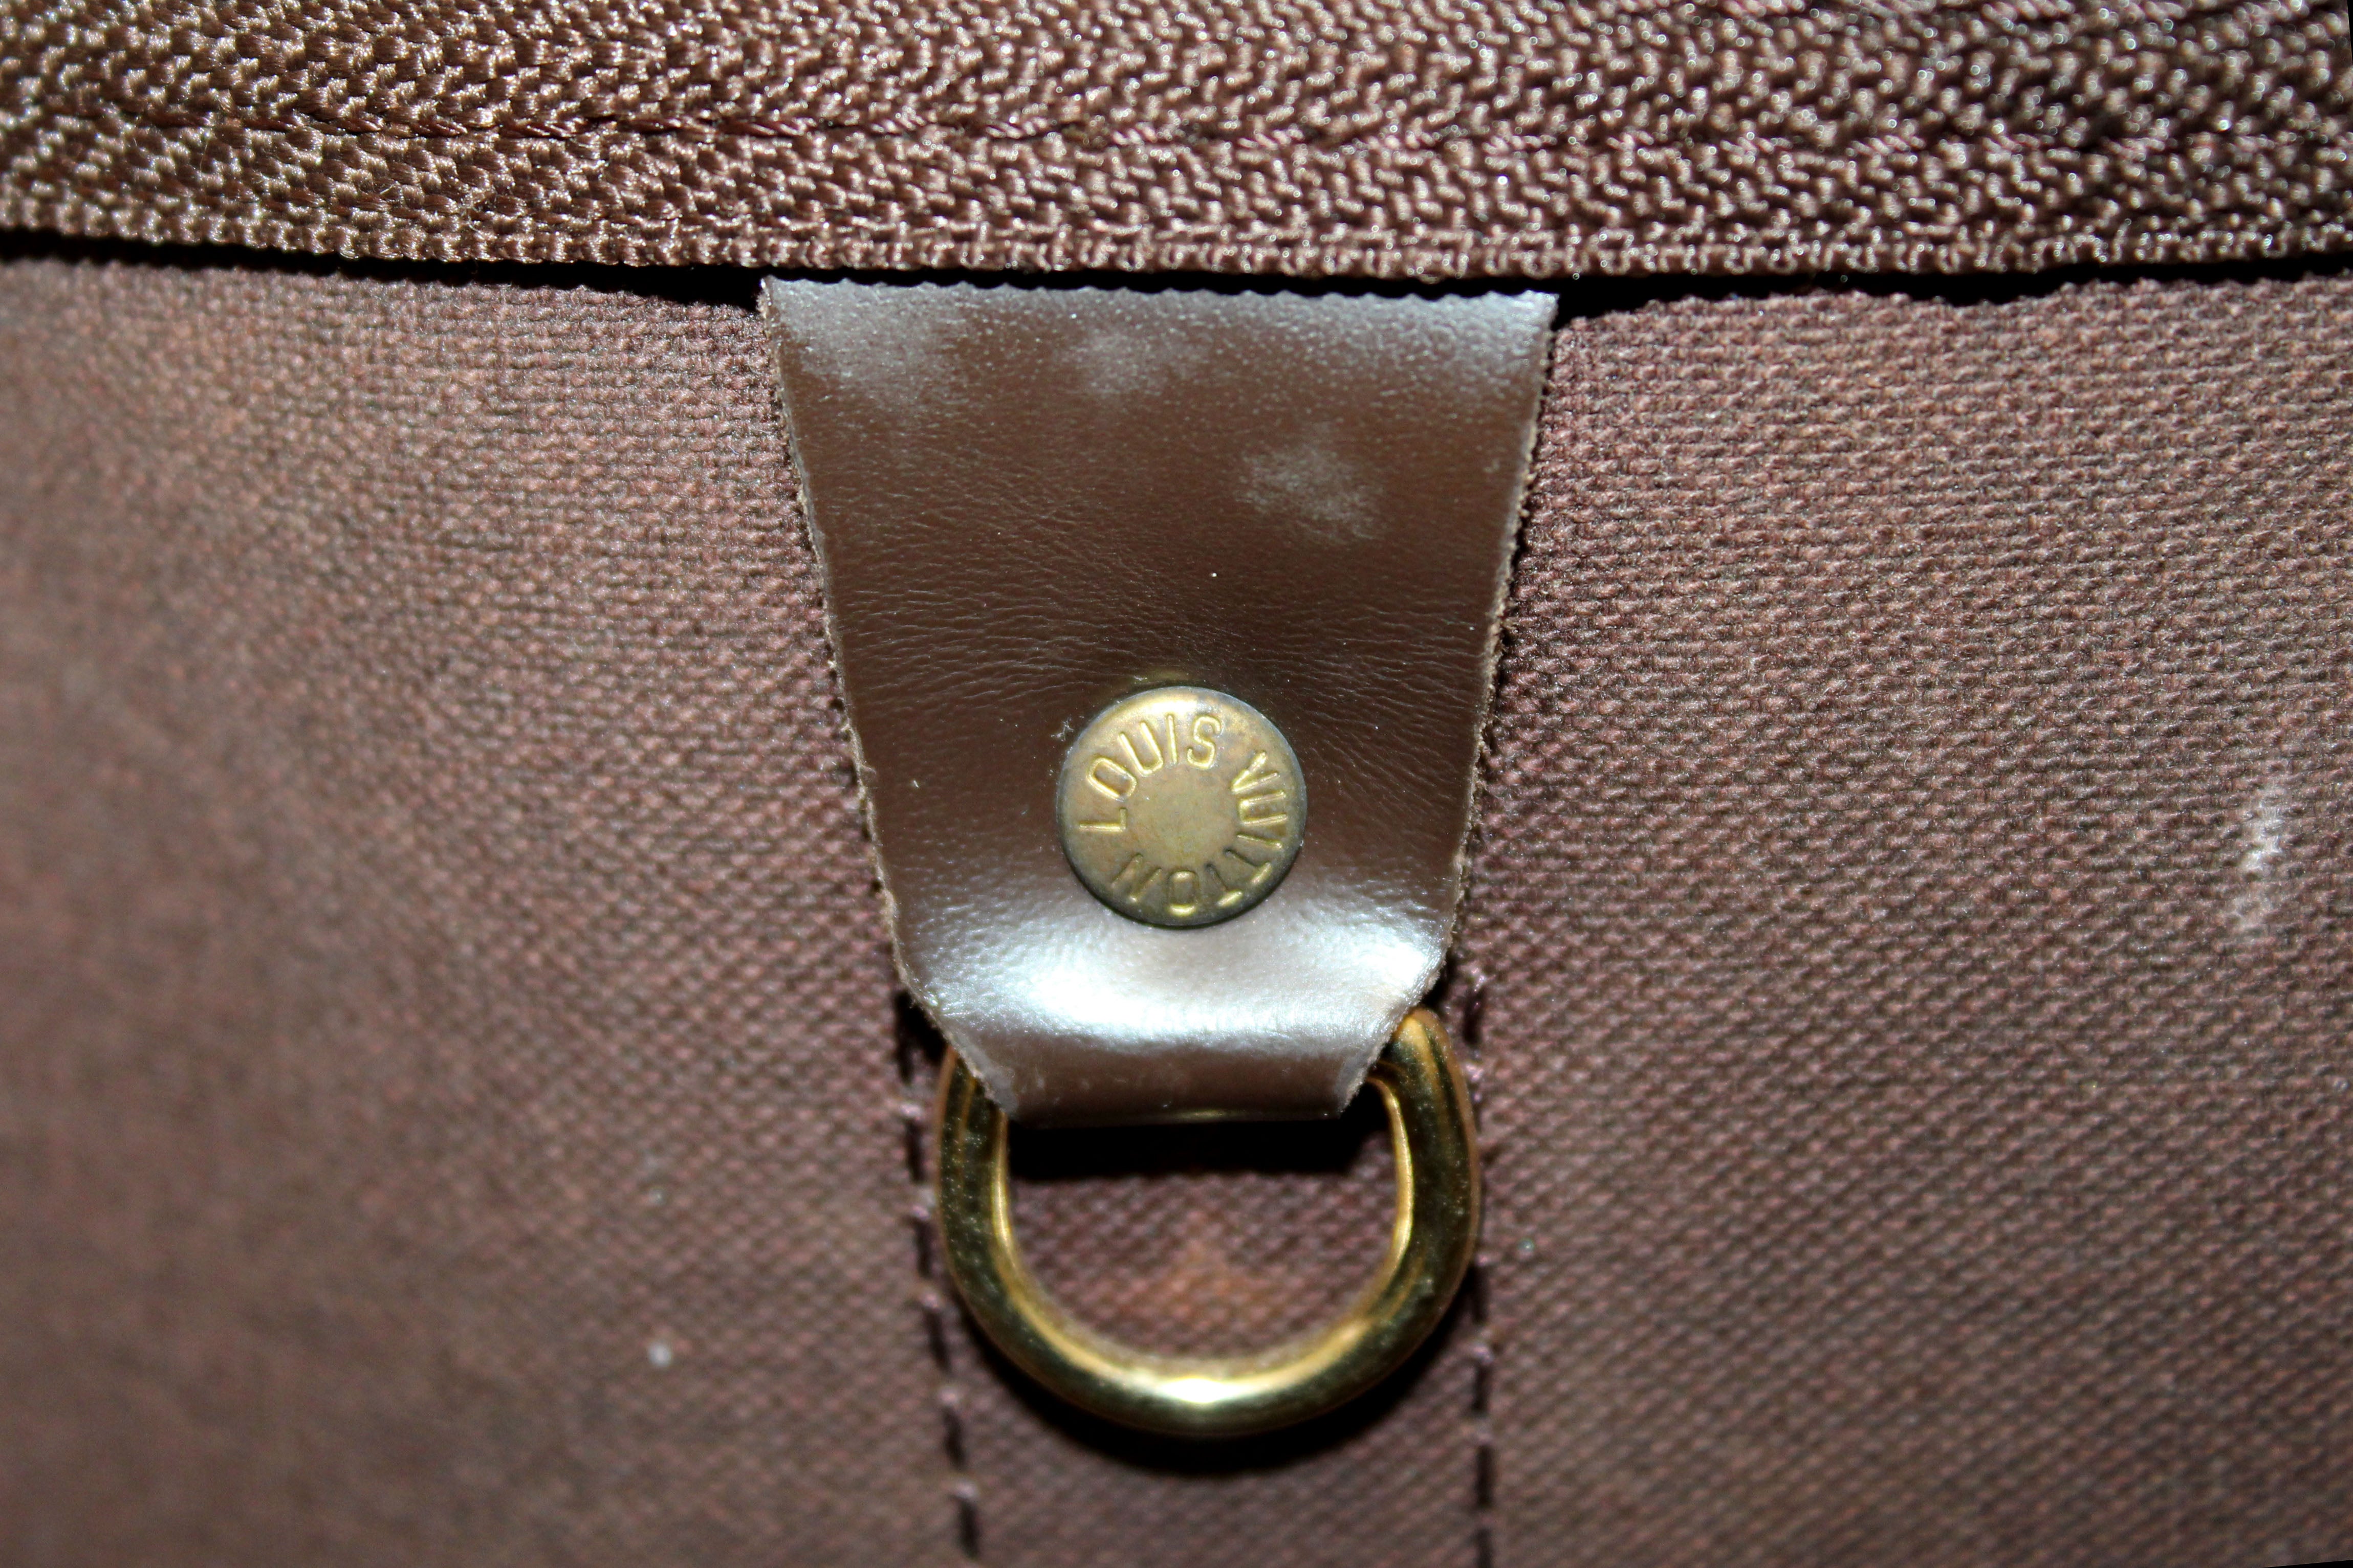 Louis Vuitton Damier Ebene Clipper Bandouliere Travel Bag – The